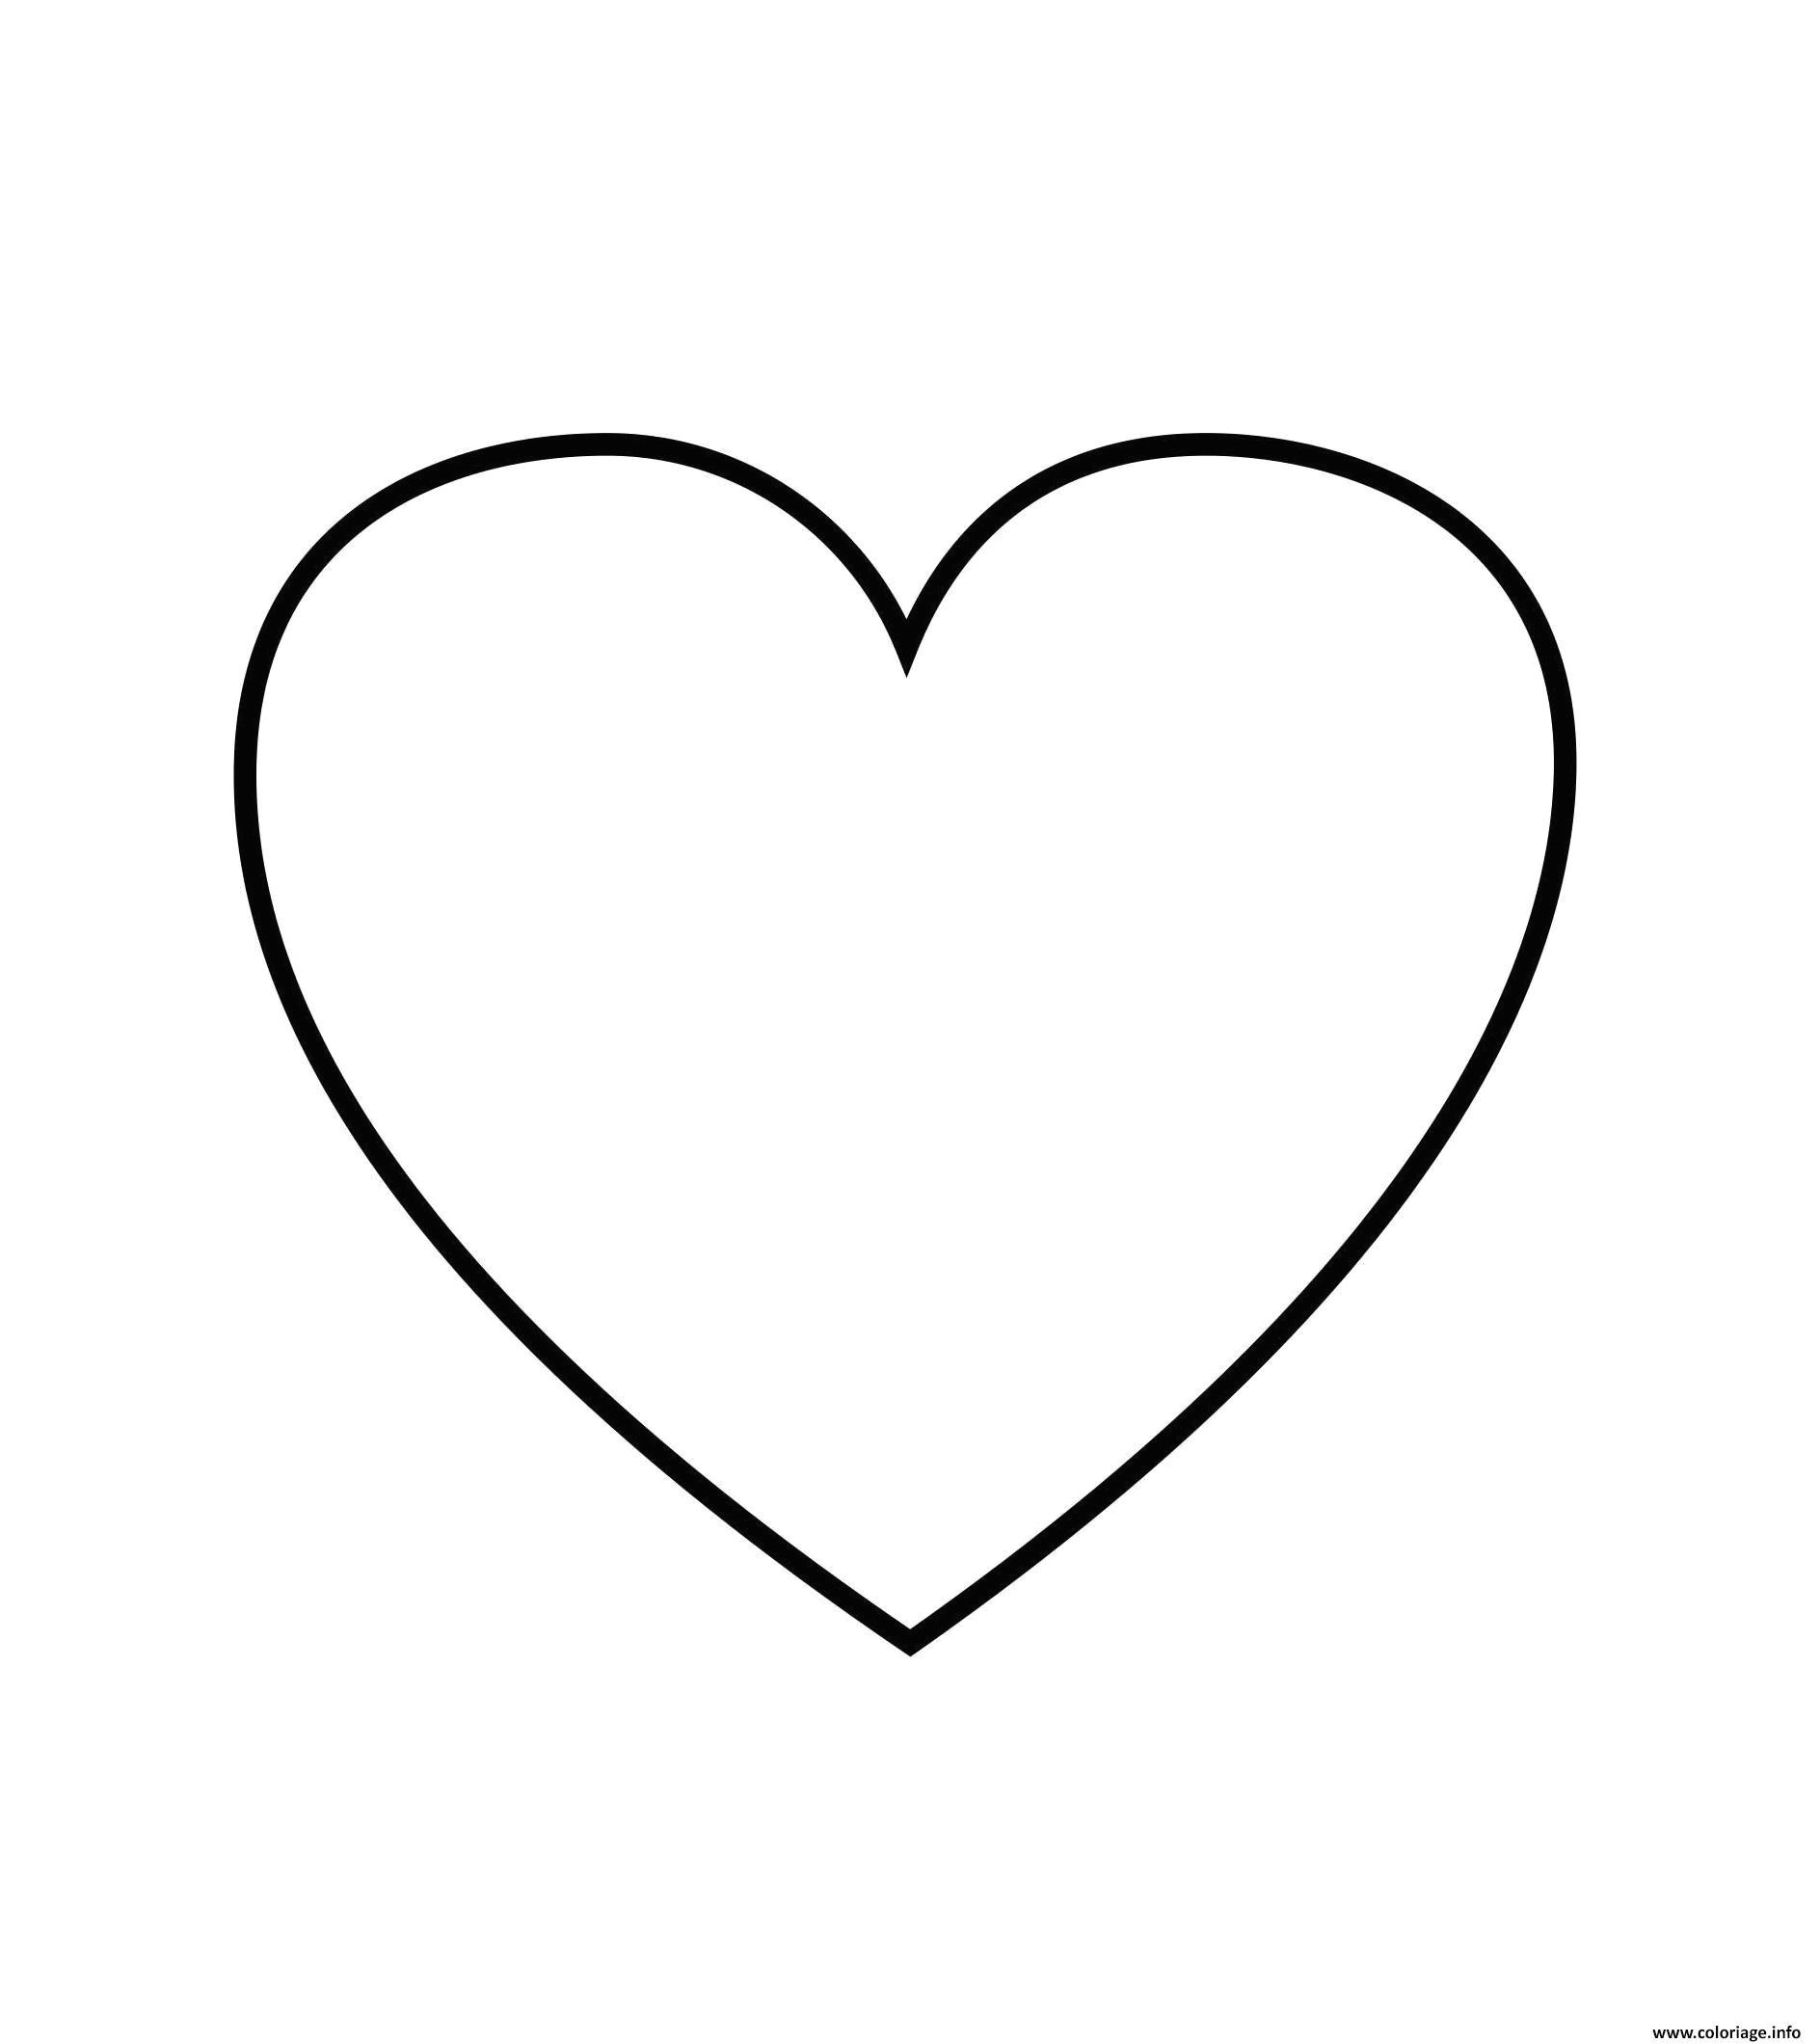 coloriage de coeur d amour a imprimer 22 top dessin de coeur d amour  imprimer 2